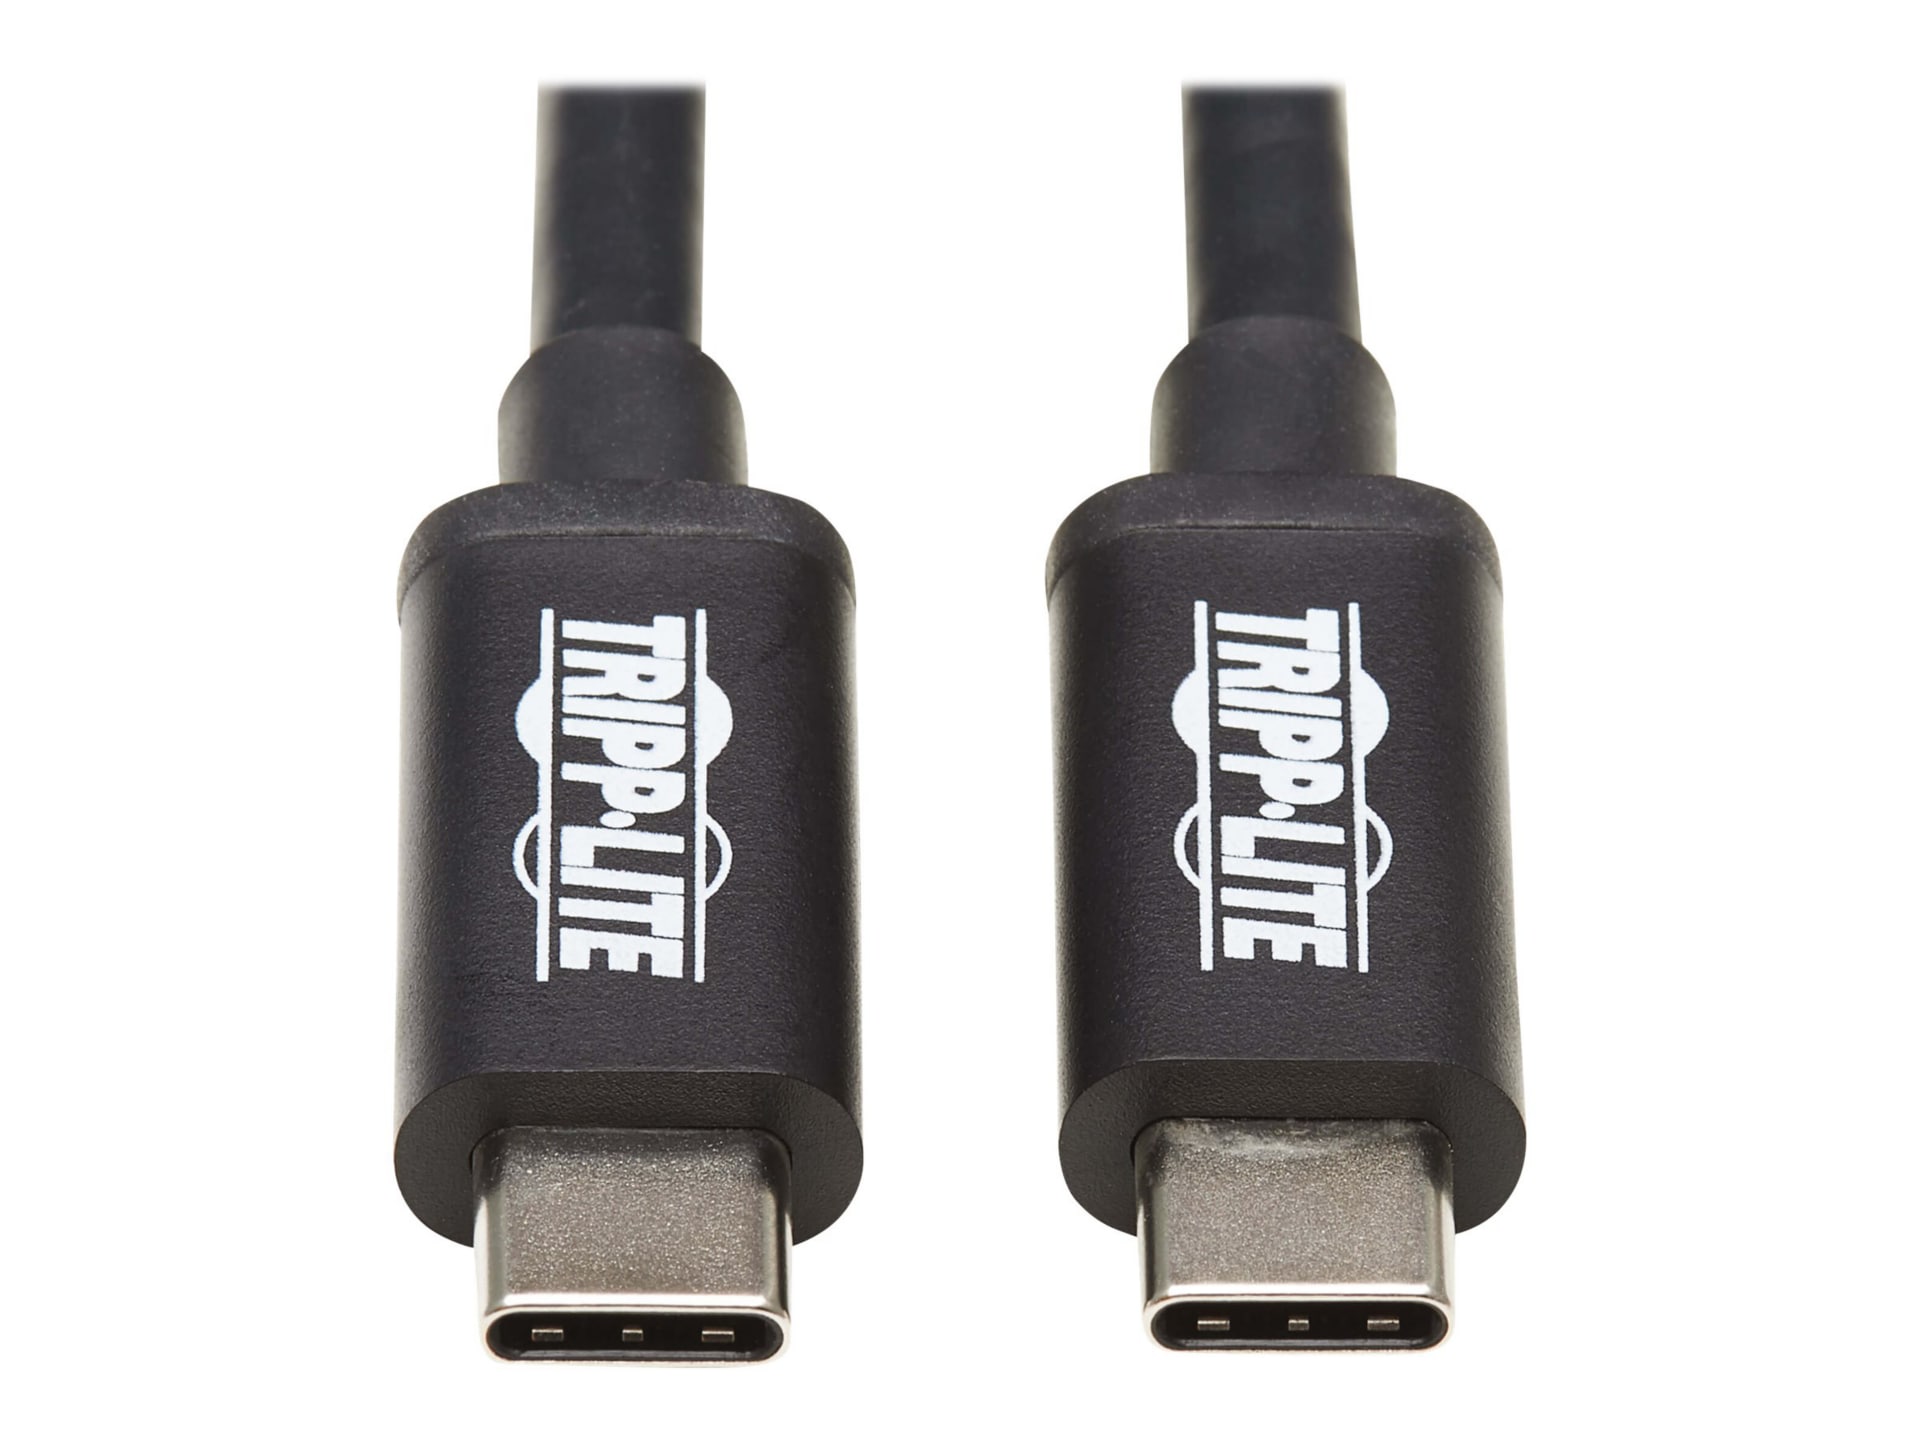 Tripp Lite Thunderbolt 3 Cable 20 Gbps Passive 5A 100W PD 4K USB C M/M 1.5M